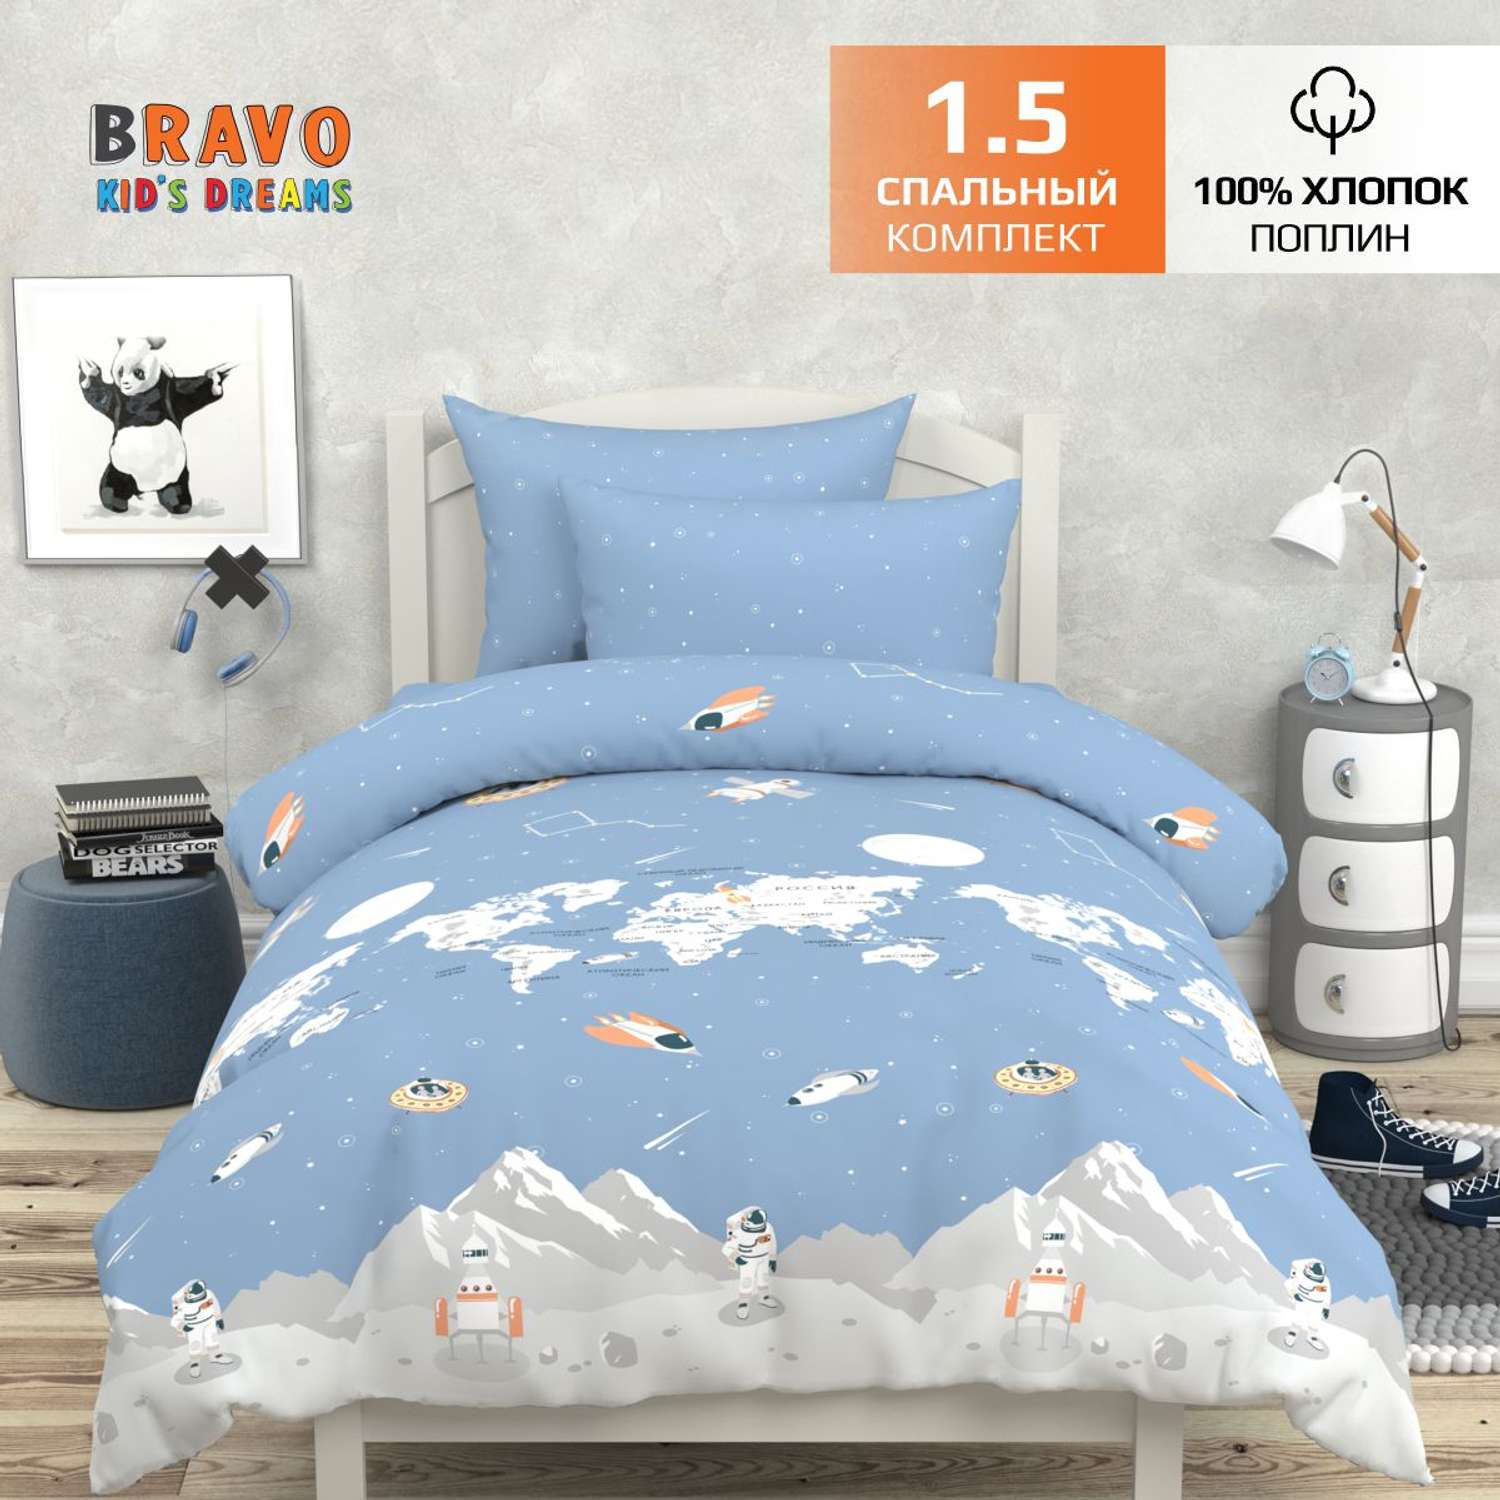 Комплект постельного белья BRAVO kids dreams Maps 1.5-спальный наволочка 70х70 рис.6100-1+6100а-1 - фото 1